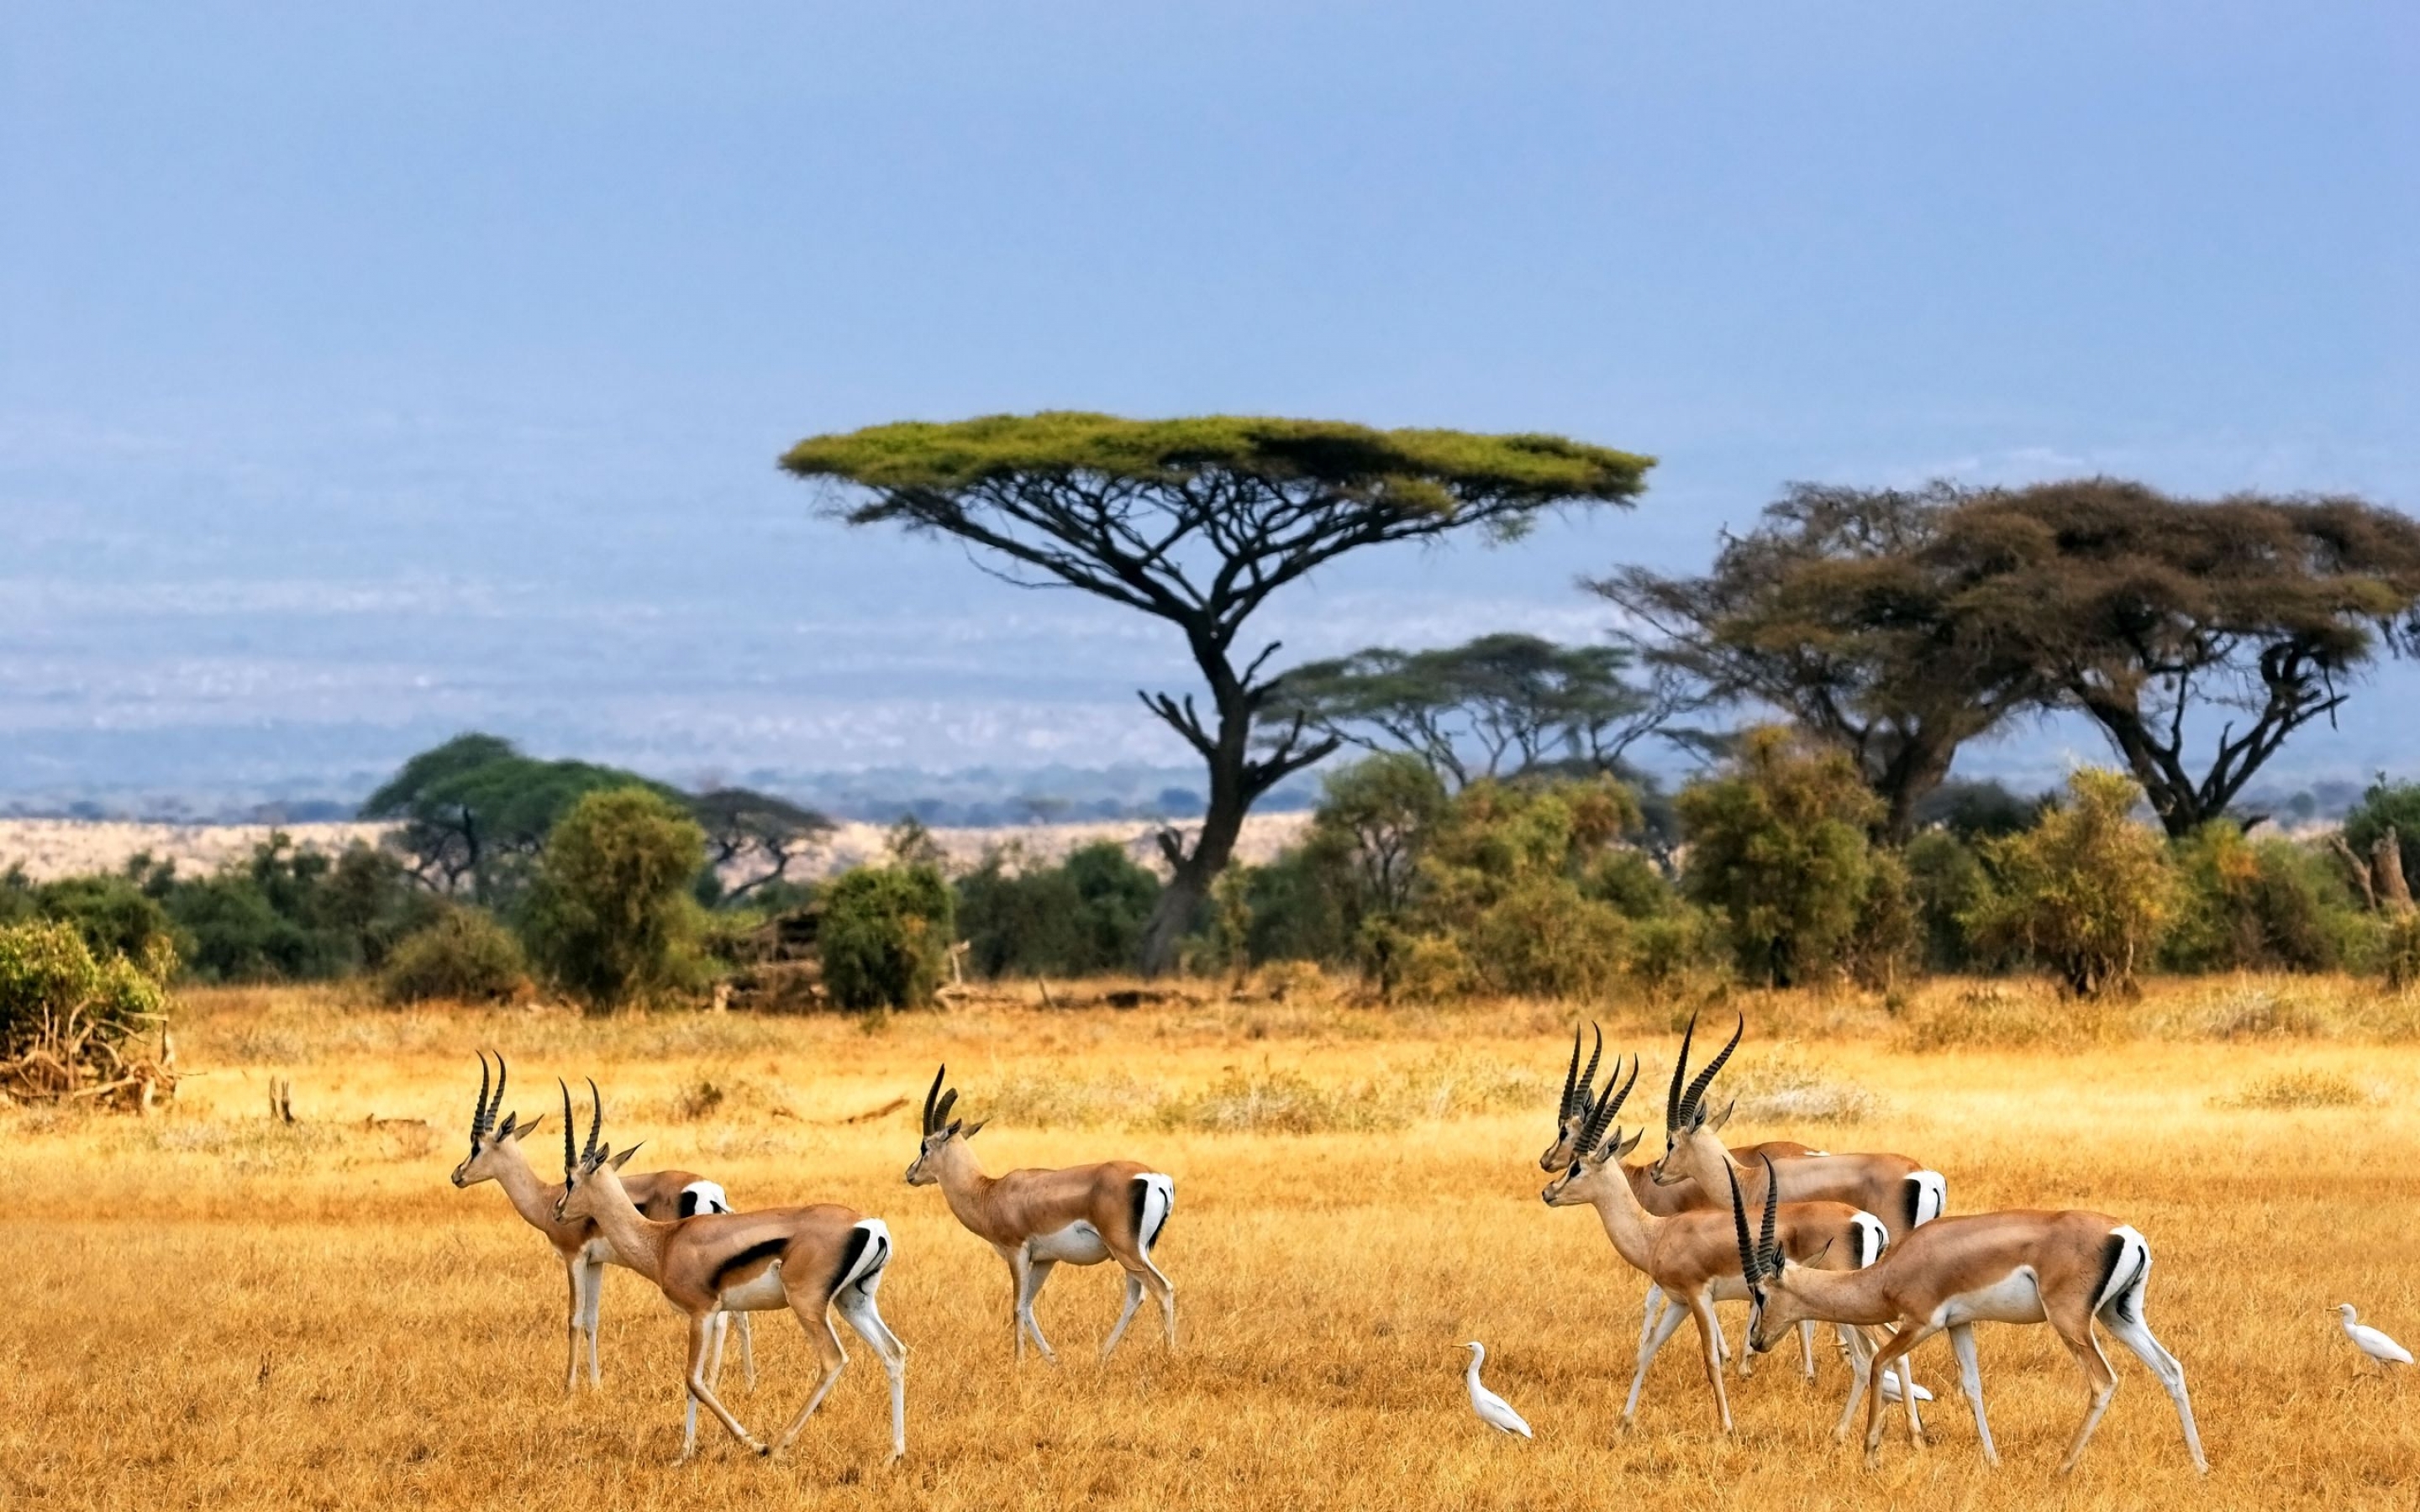 Африканские антилопы пасутся на лугу возле деревьев